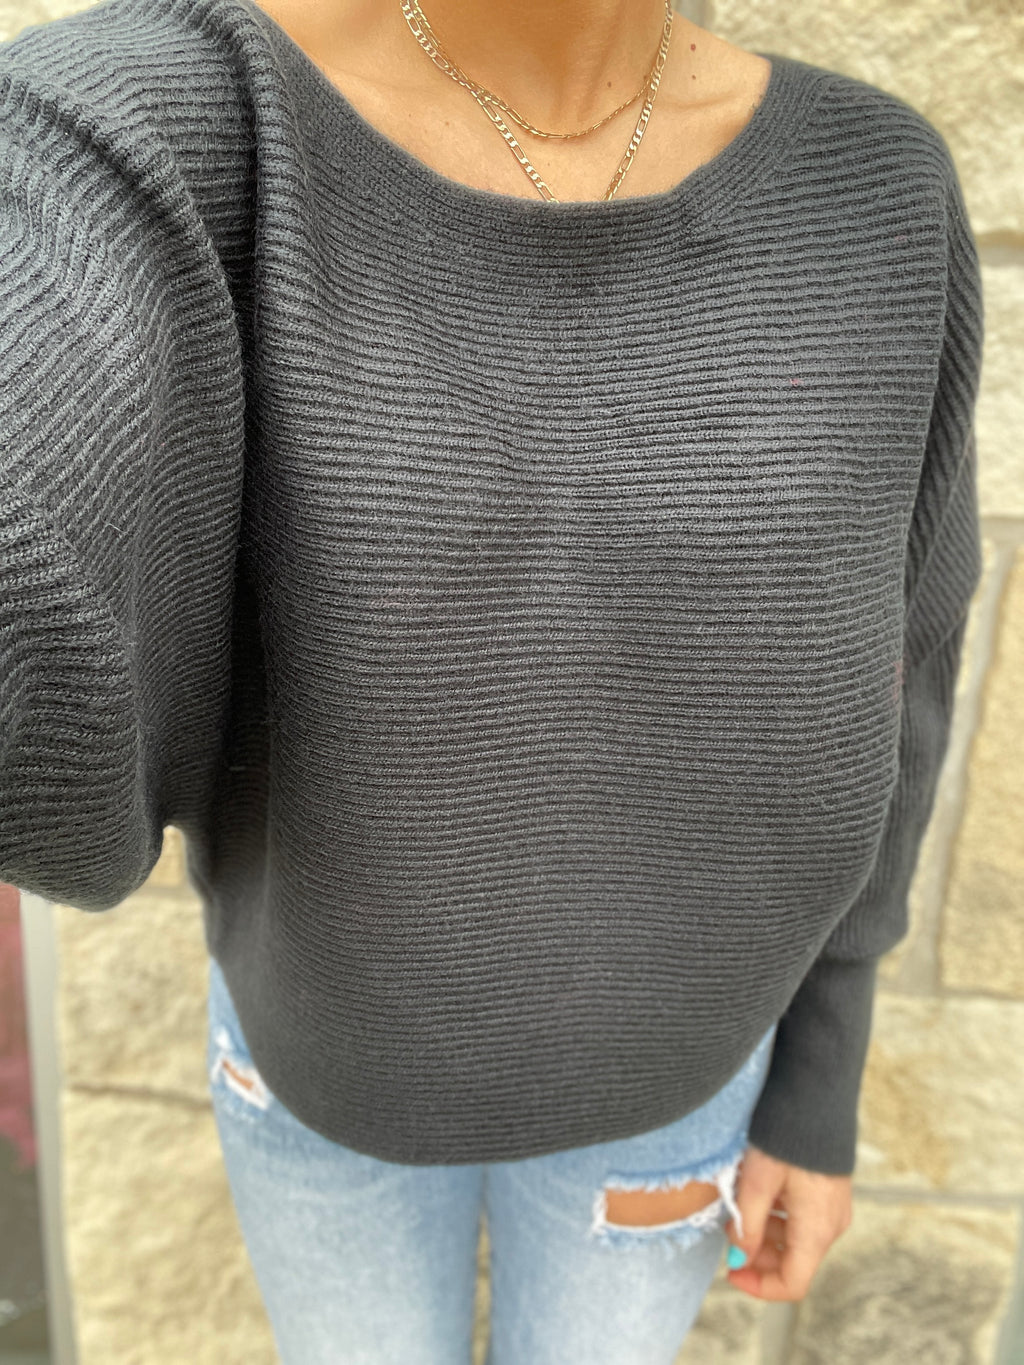 Tiffiny Sweater in Black by Dear John